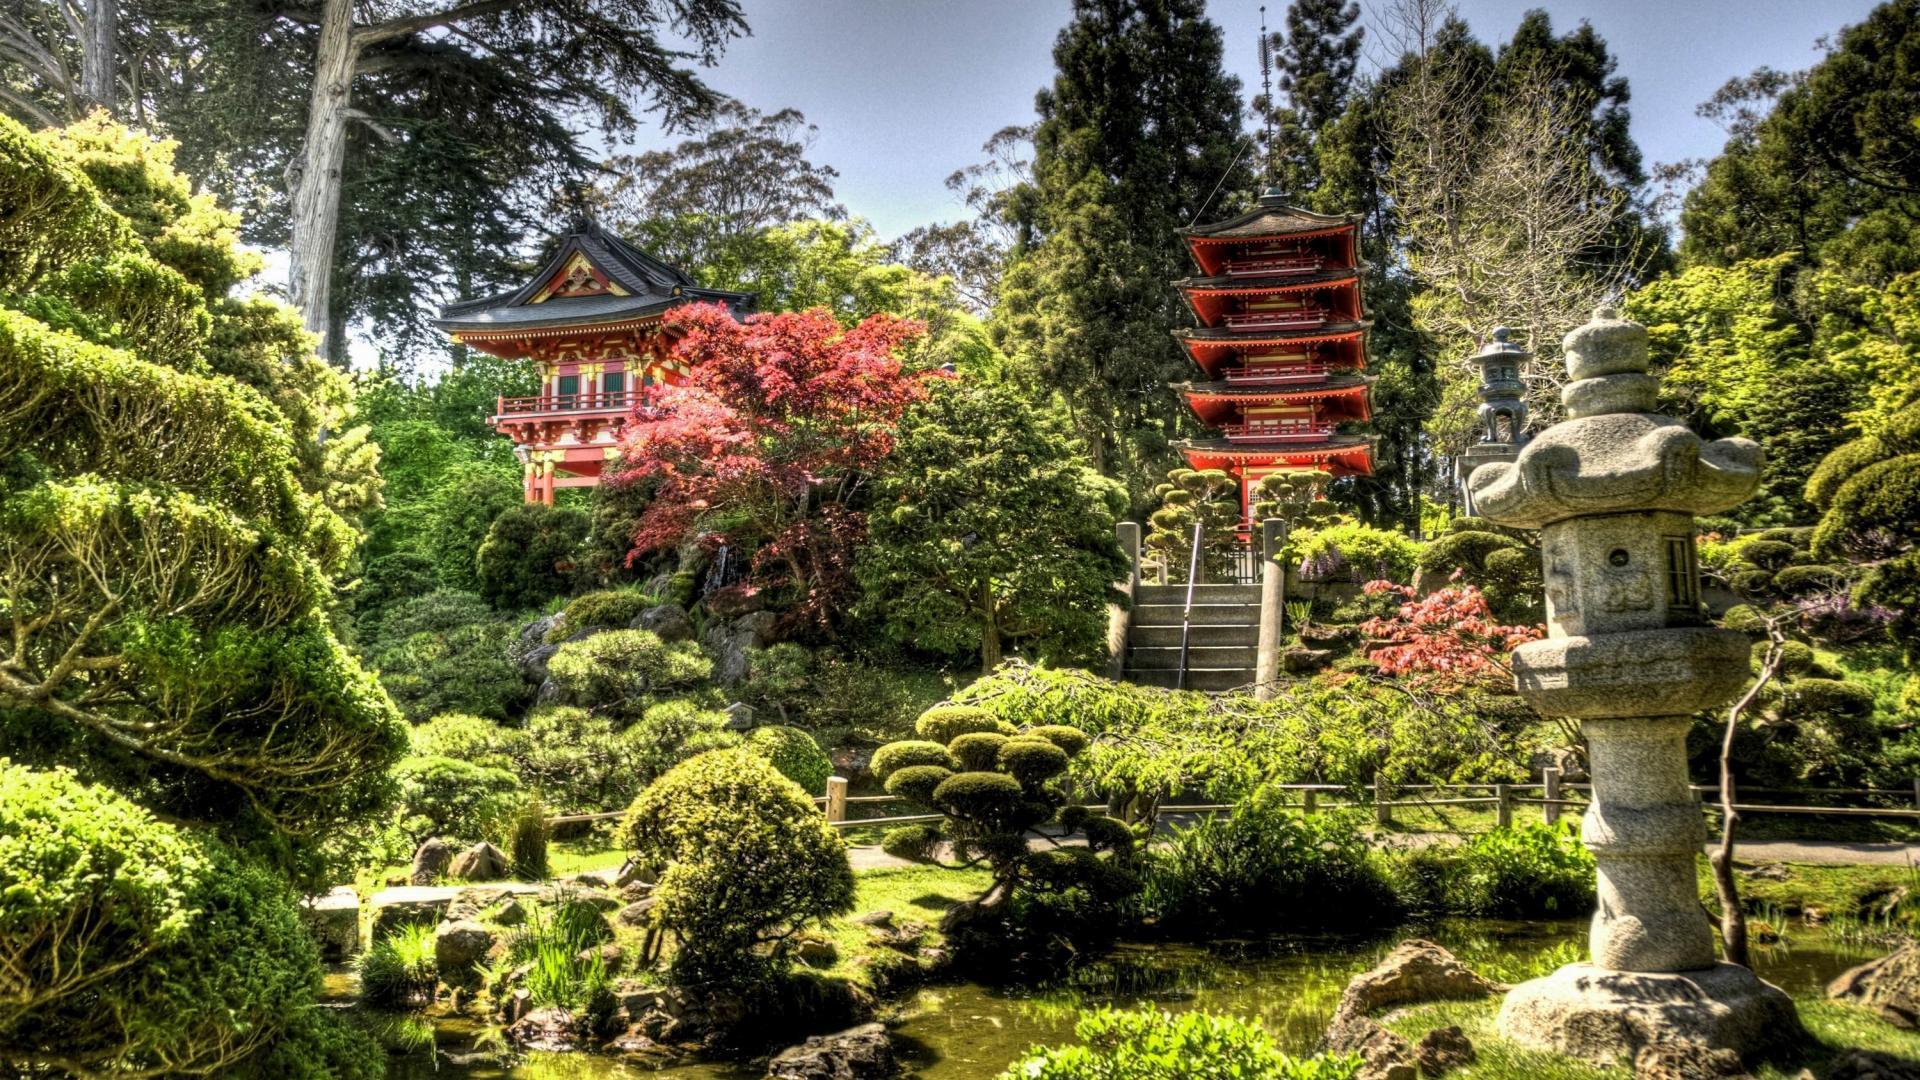 1920x1080px Japanese Tea Garden (553.09 KB).03.2015